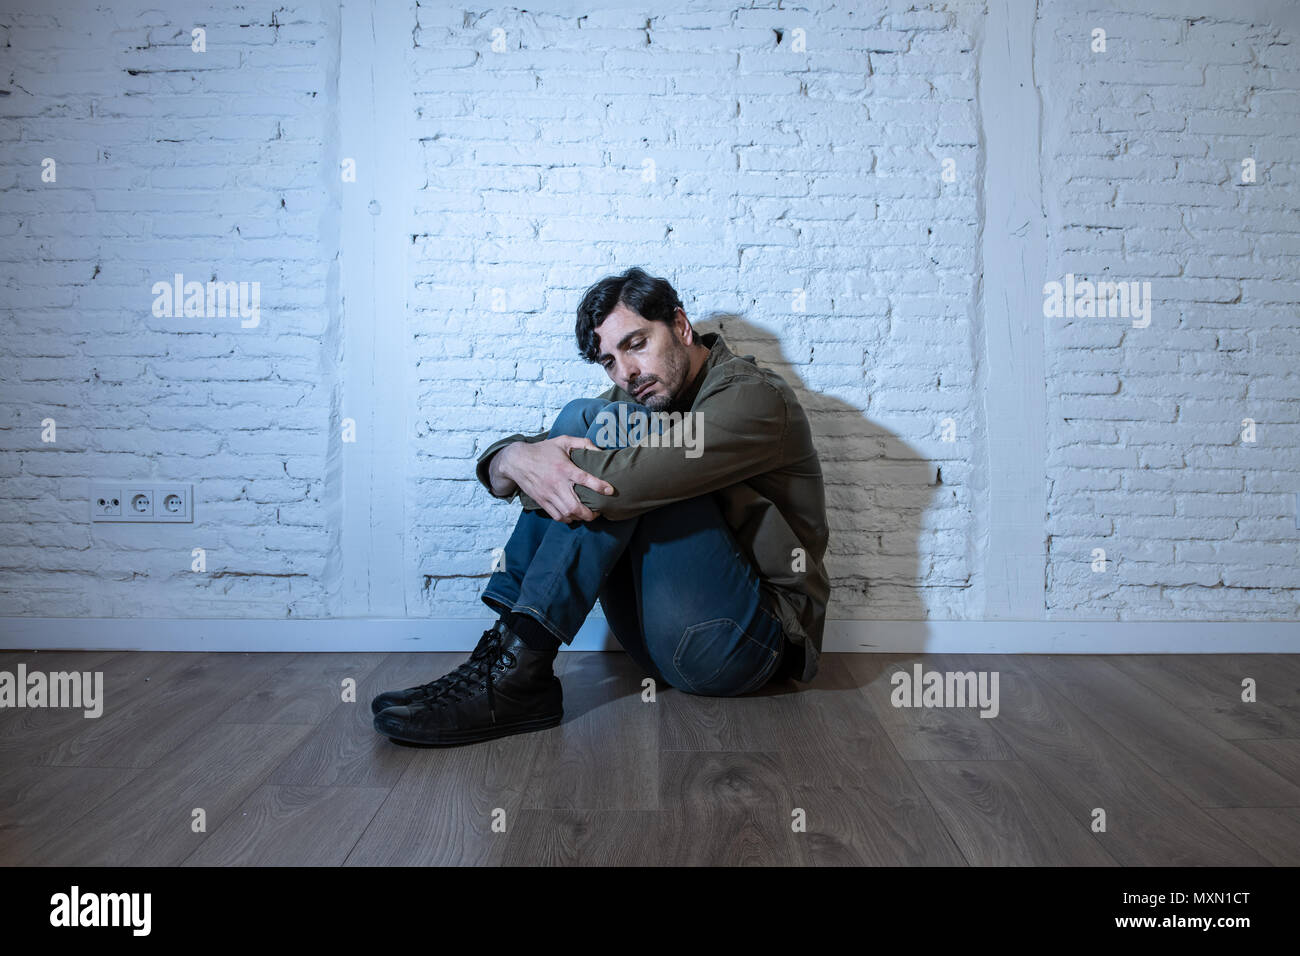 Junge depressiven Mann gegen eine weiße Wand zu Hause sitzen mit einem Schatten auf der Wand Gefühl miserabel, einsam und traurig in der psychischen Gesundheit Depression conce Stockfoto